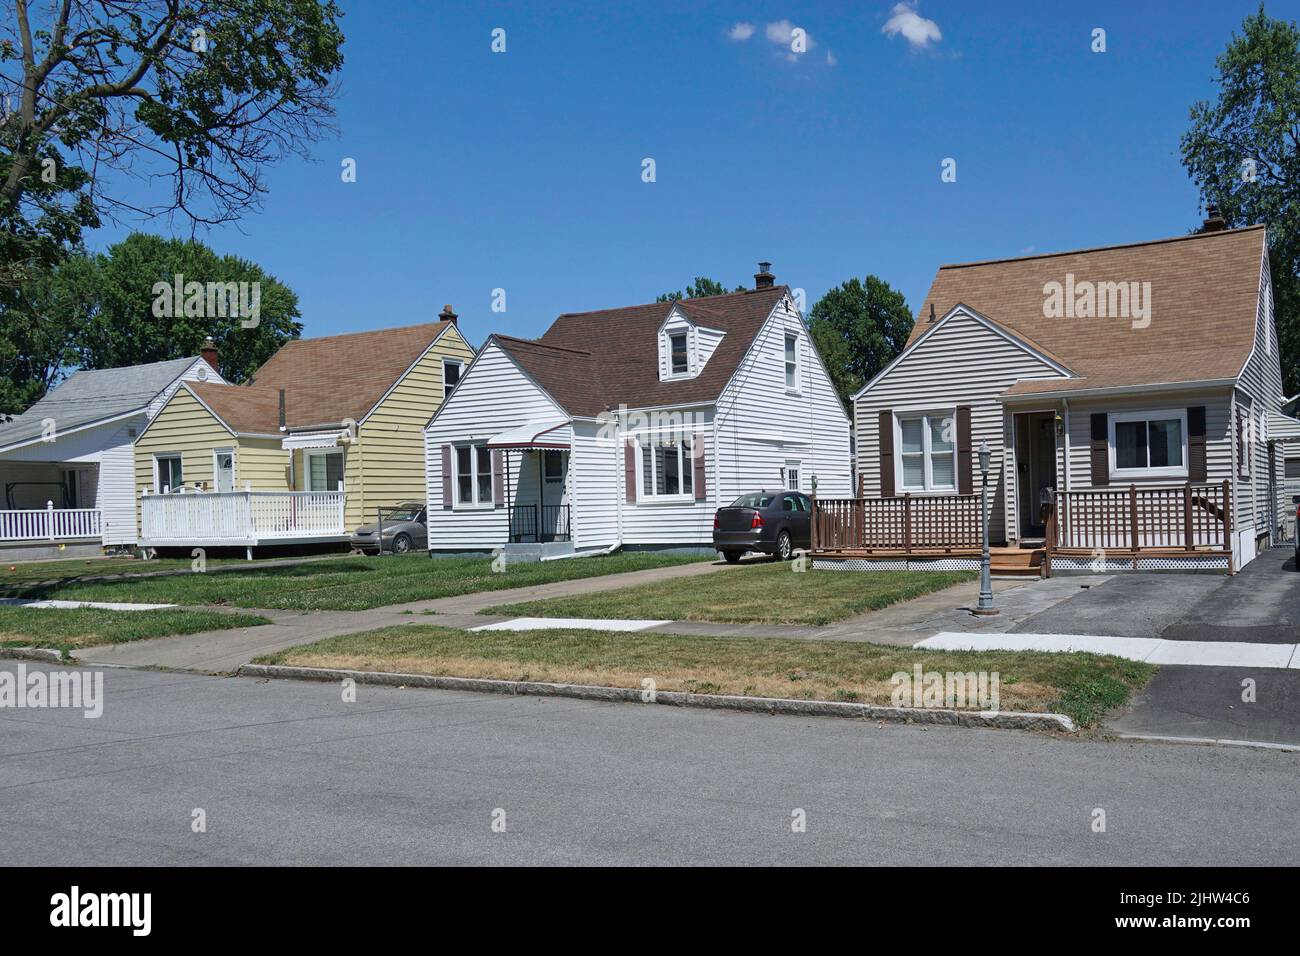 Strada residenziale suburbana americana media con modeste case indipendenti coperte in alluminio Foto Stock